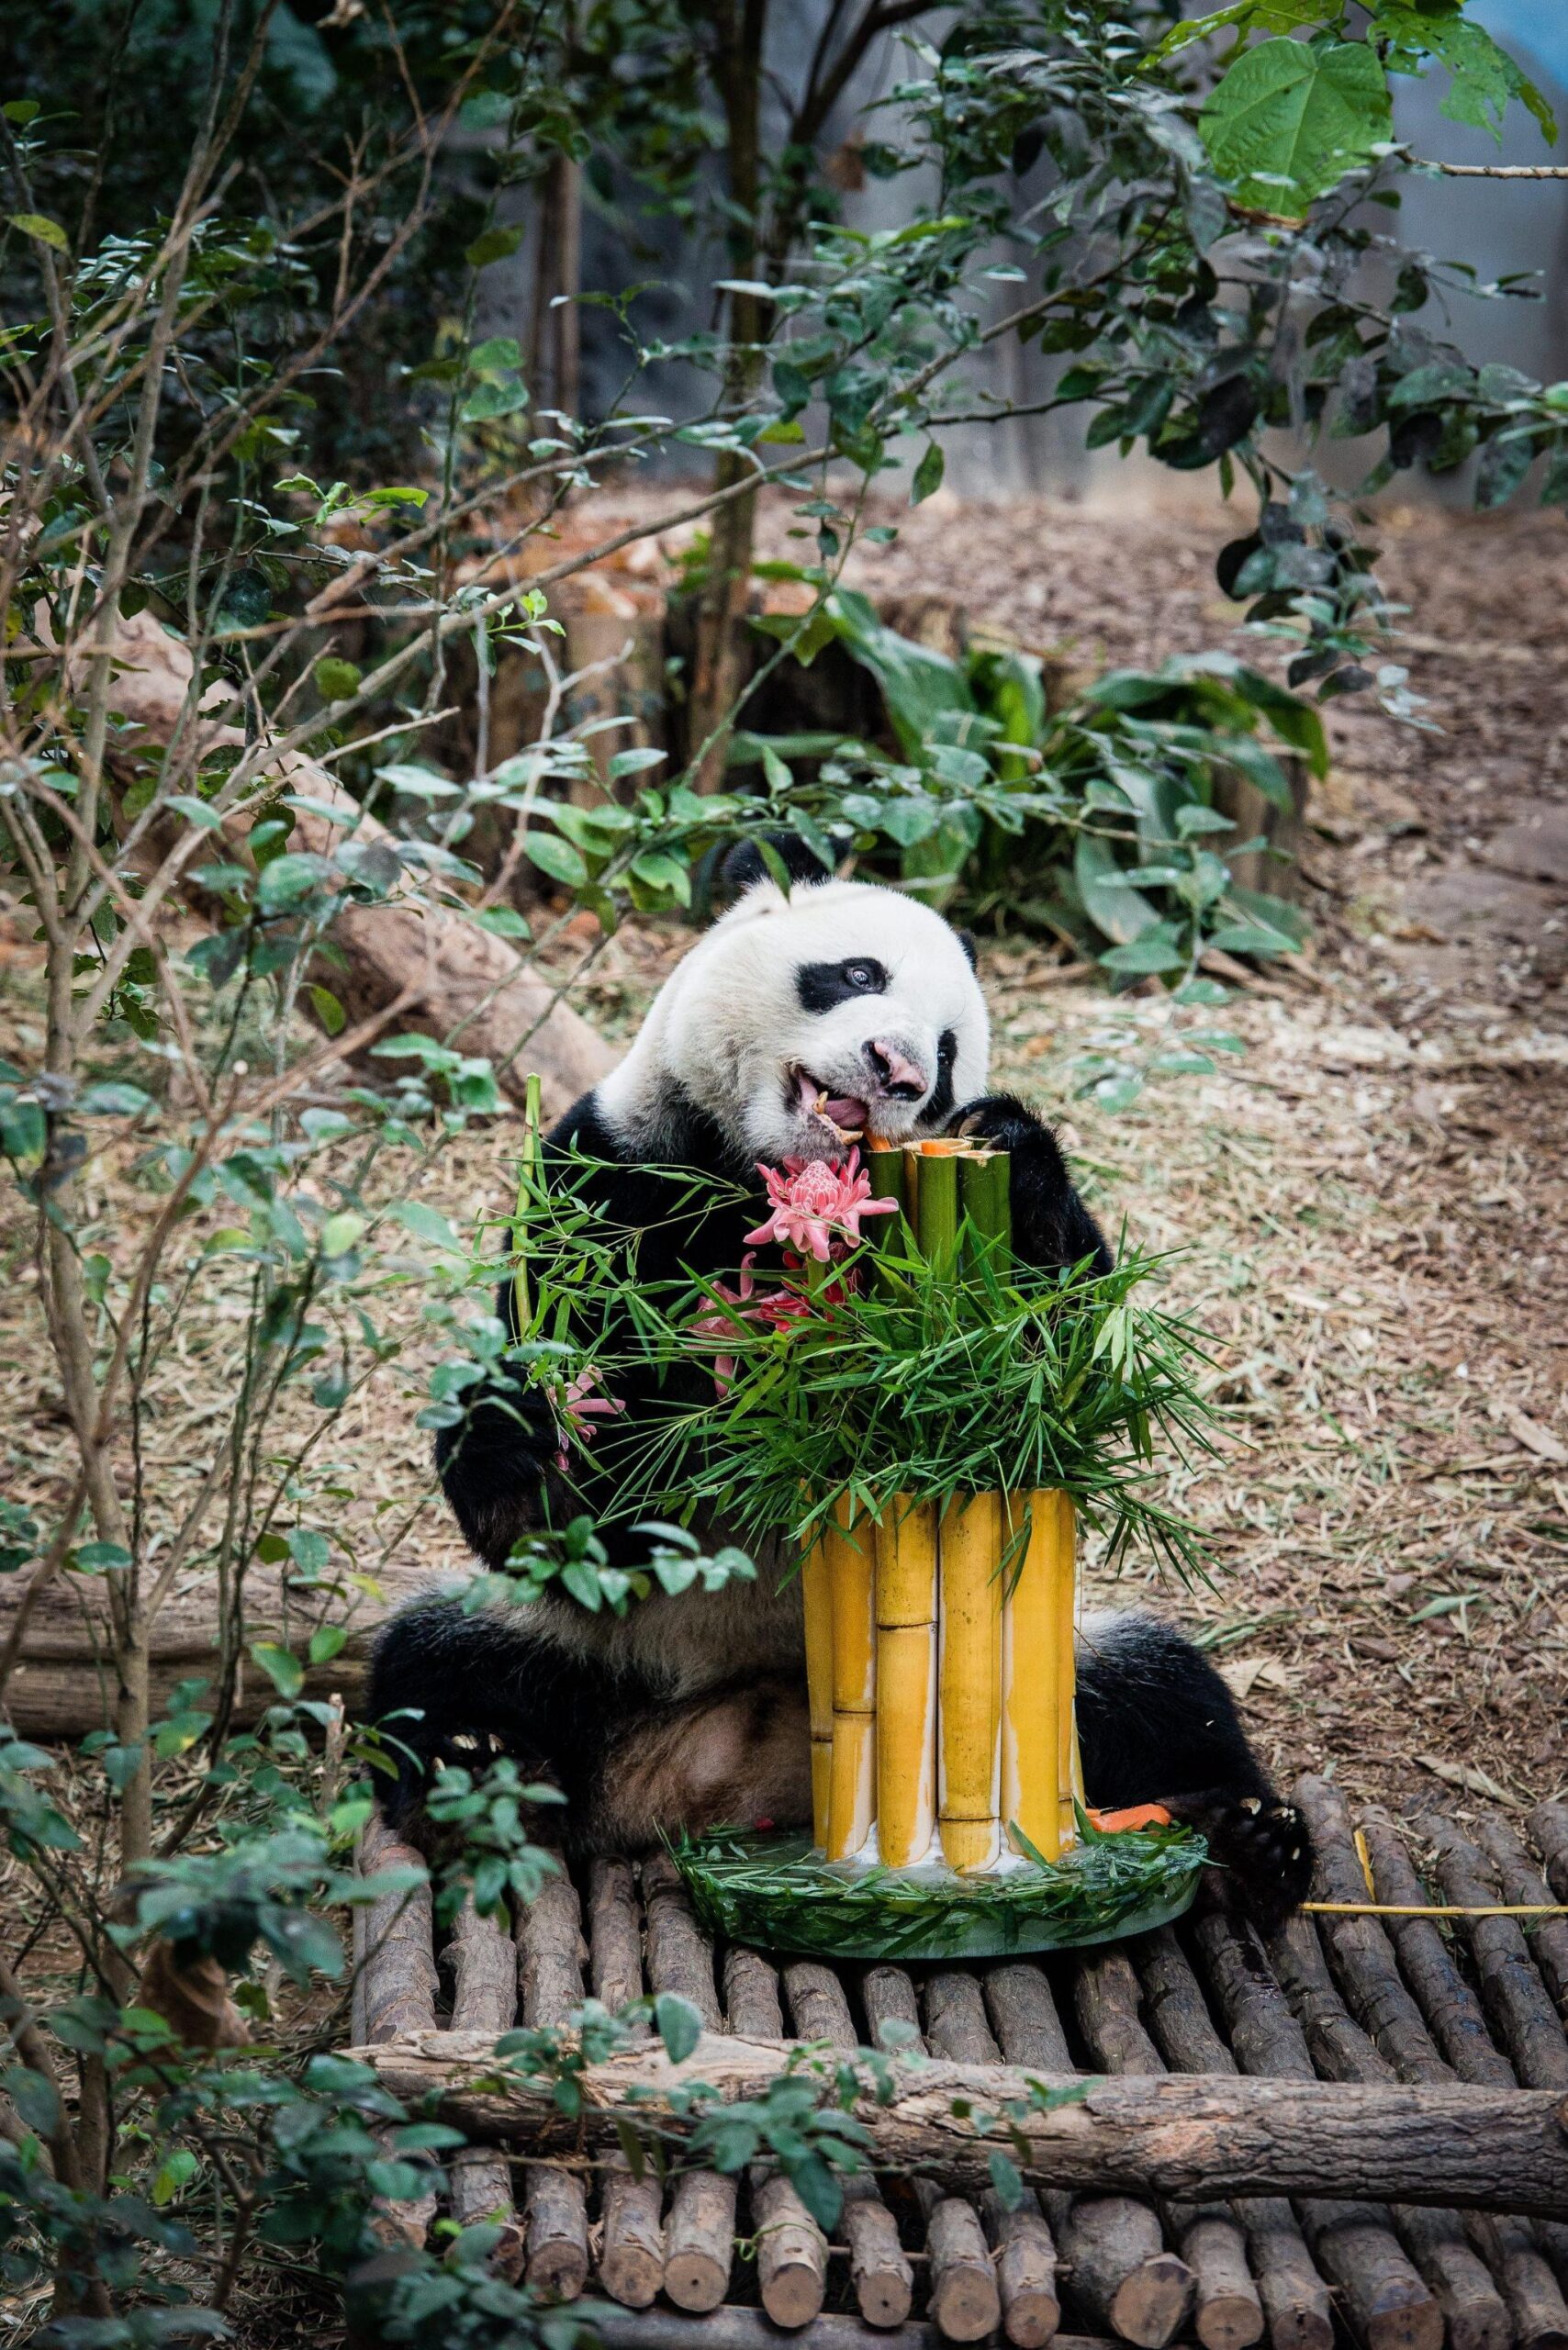 I due panda compiono gli anni e festeggiano con la torta di bamboo01